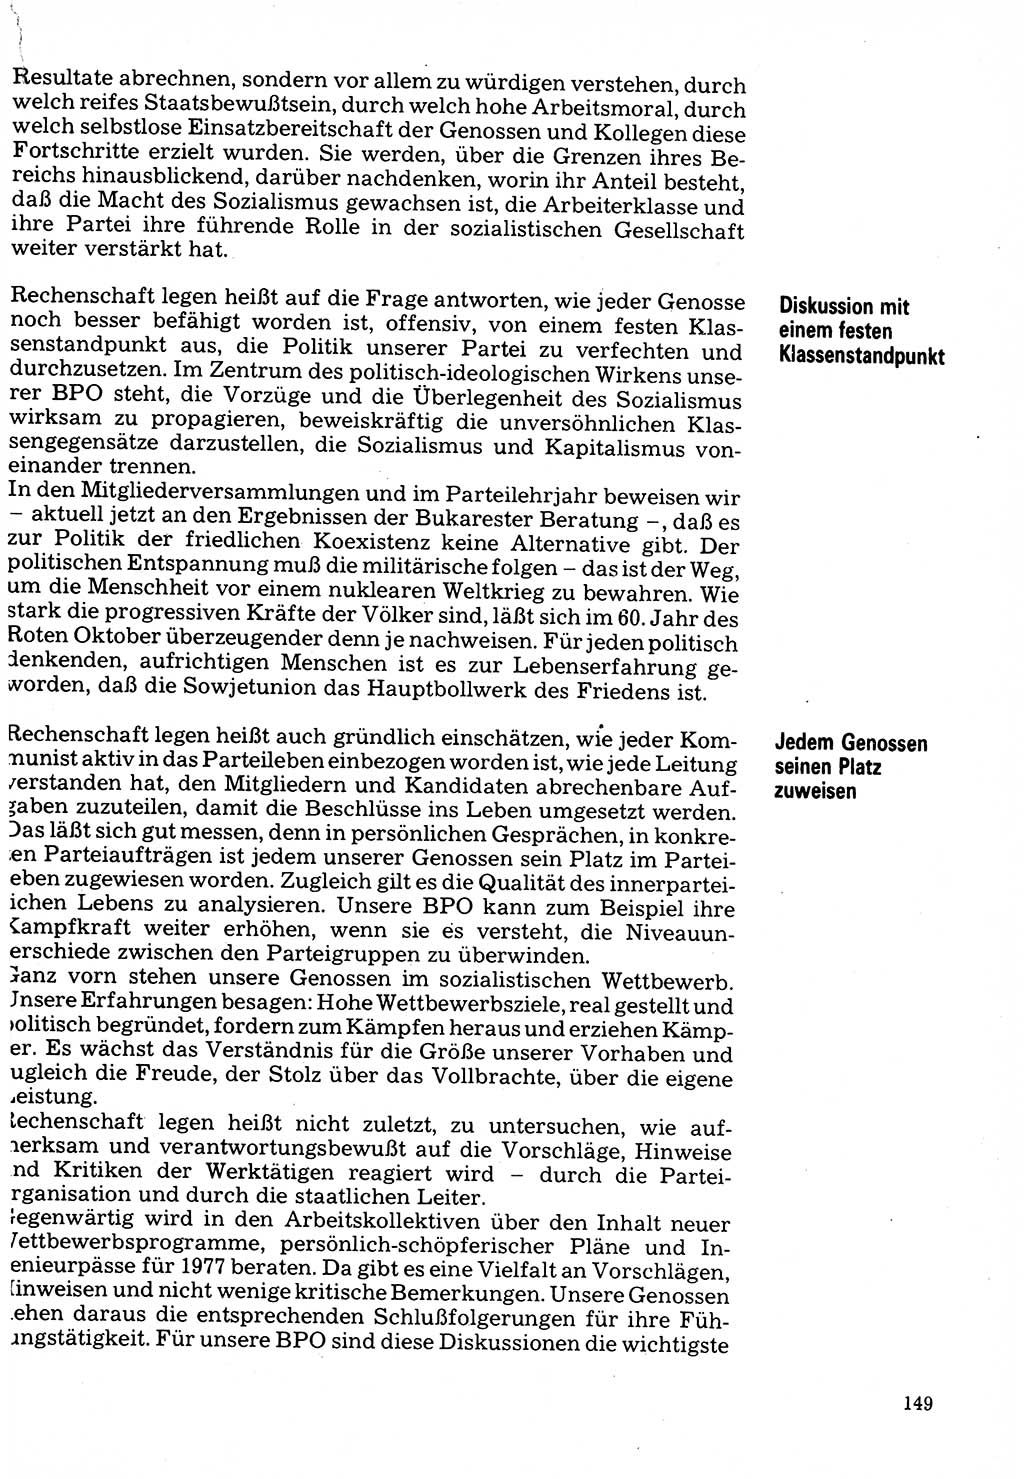 Neuer Weg (NW), Organ des Zentralkomitees (ZK) der SED (Sozialistische Einheitspartei Deutschlands) für Fragen des Parteilebens, 32. Jahrgang [Deutsche Demokratische Republik (DDR)] 1977, Seite 149 (NW ZK SED DDR 1977, S. 149)